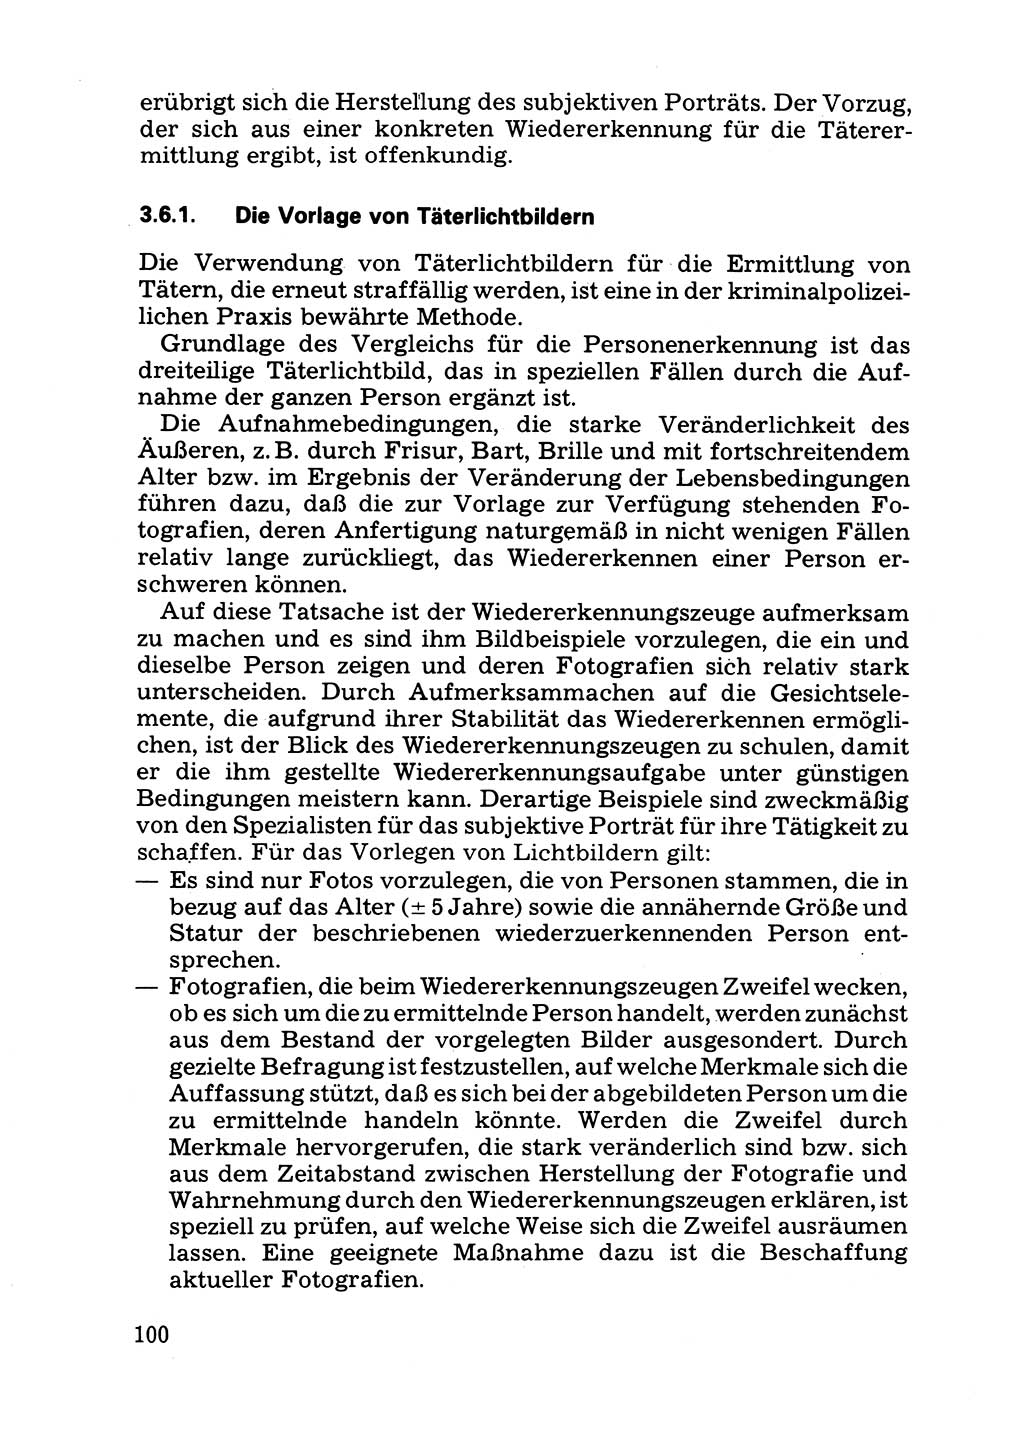 Das subjektive Porträt [Deutsche Demokratische Republik (DDR)] 1981, Seite 100 (Subj. Port. DDR 1981, S. 100)